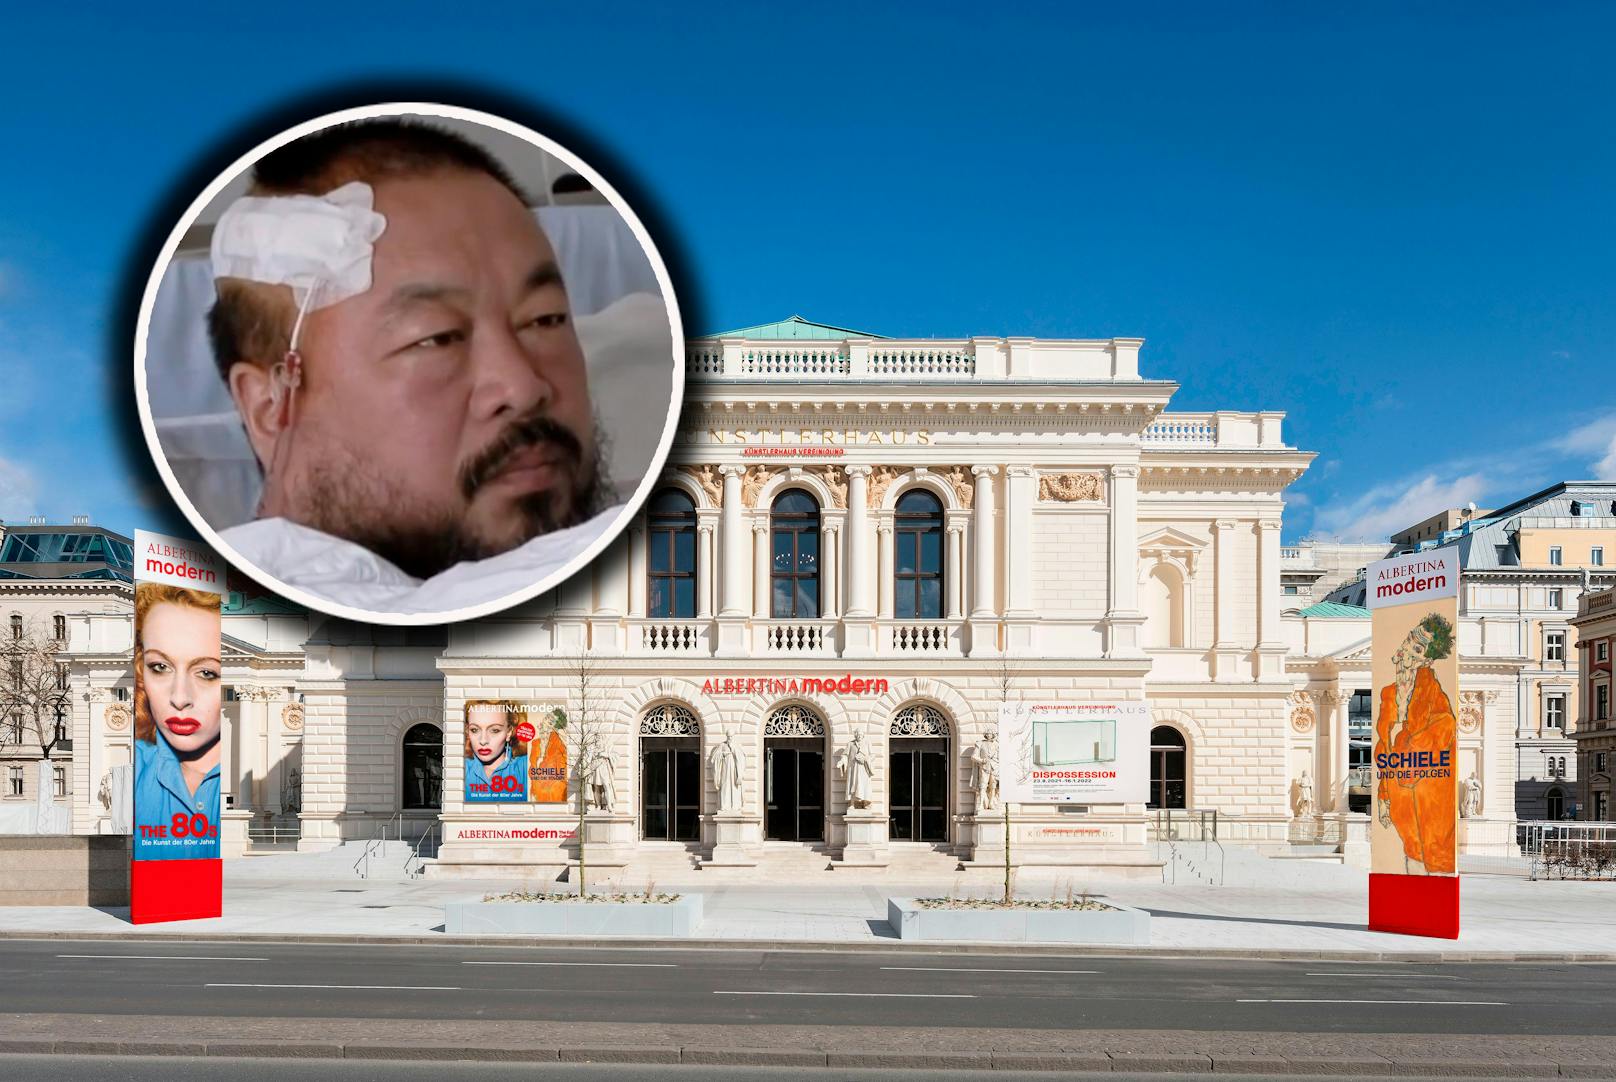 Künstler Ai Weiwei hat den Instagram-Account der Albertina übernommen und postet über seine Kunst, sowie aktuelle Ereignisse.